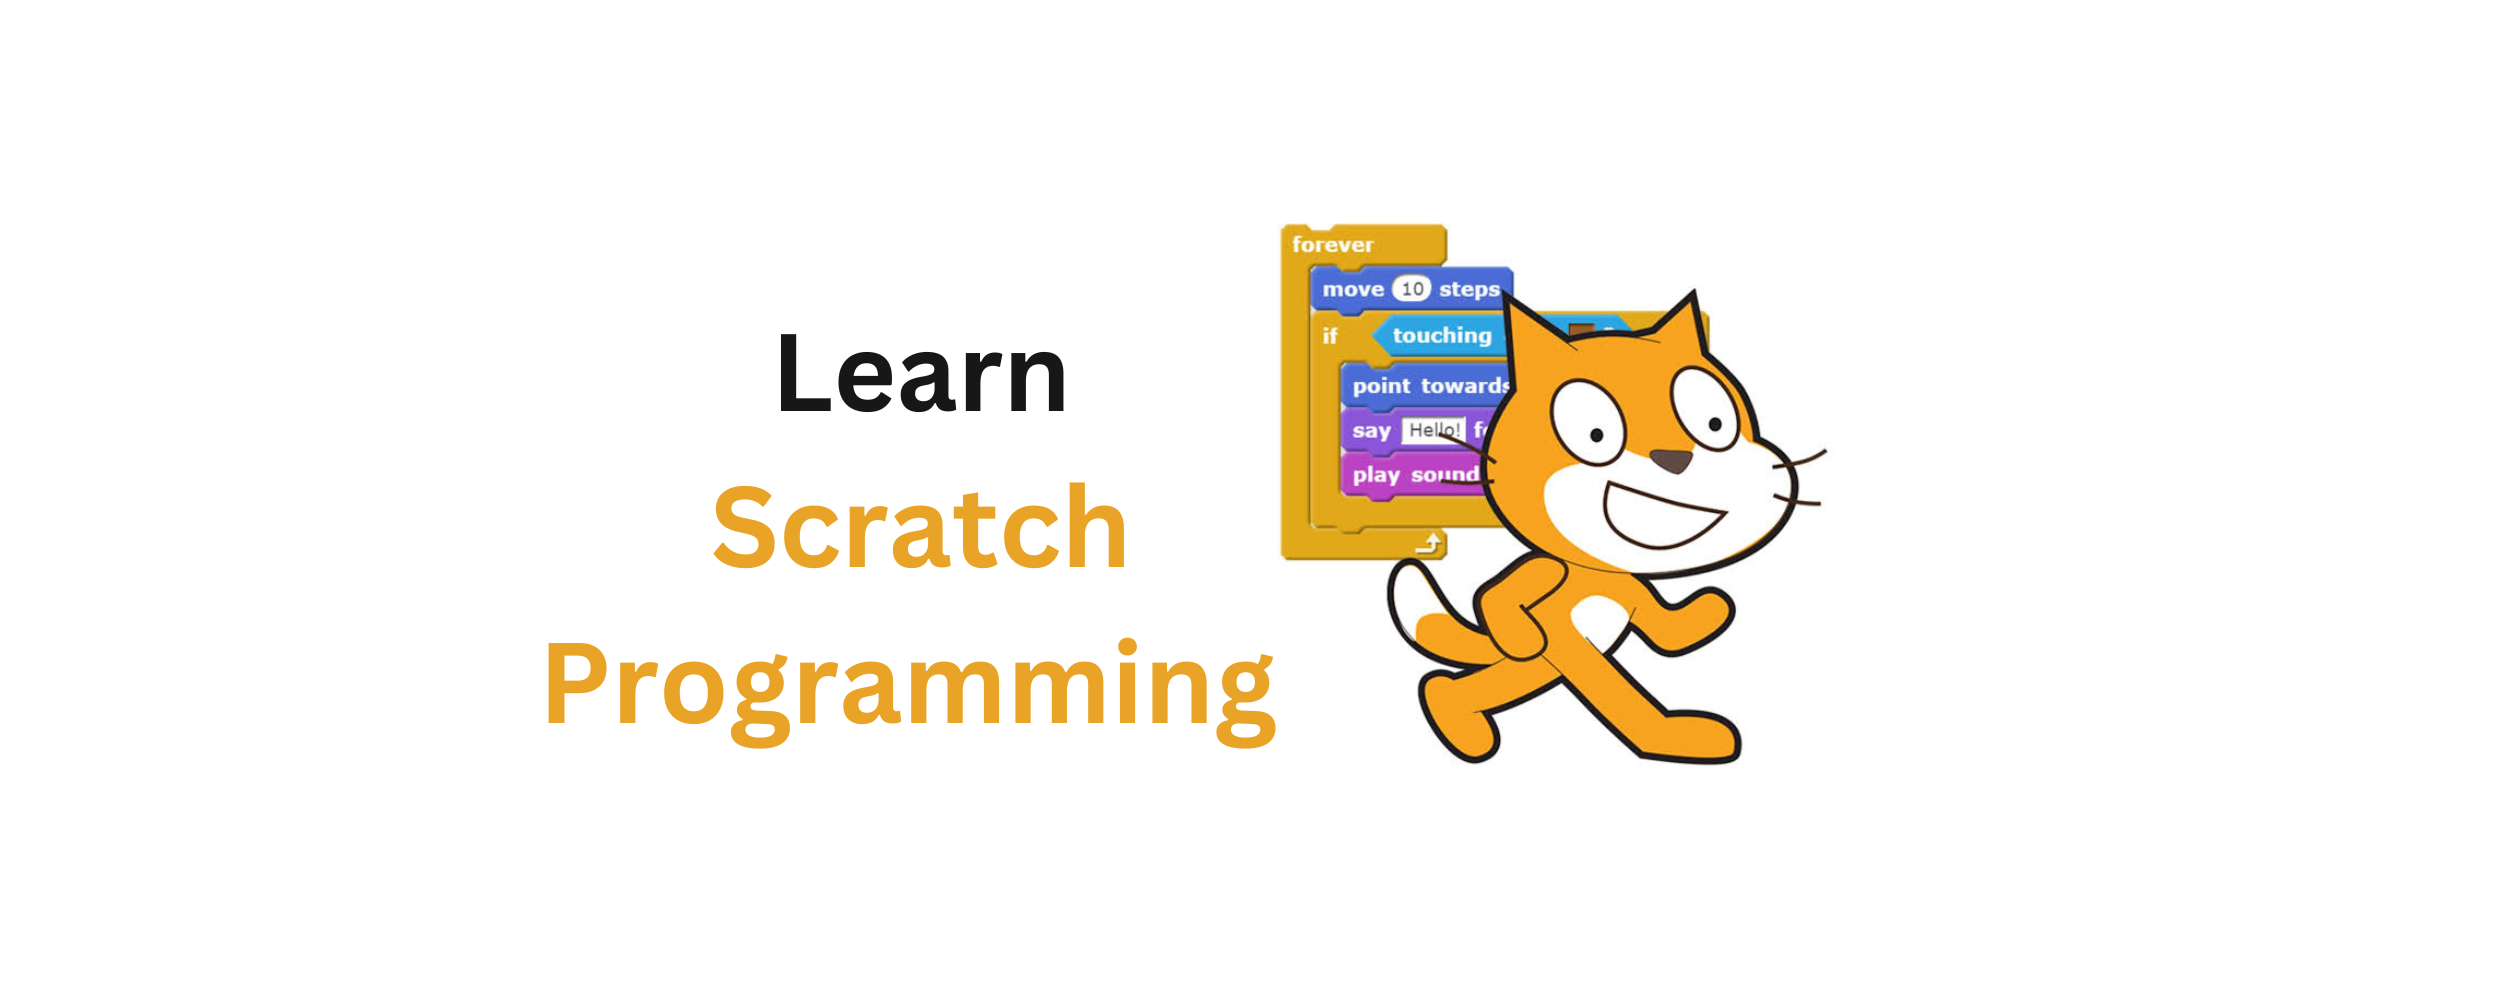 Learn Scratch Programming